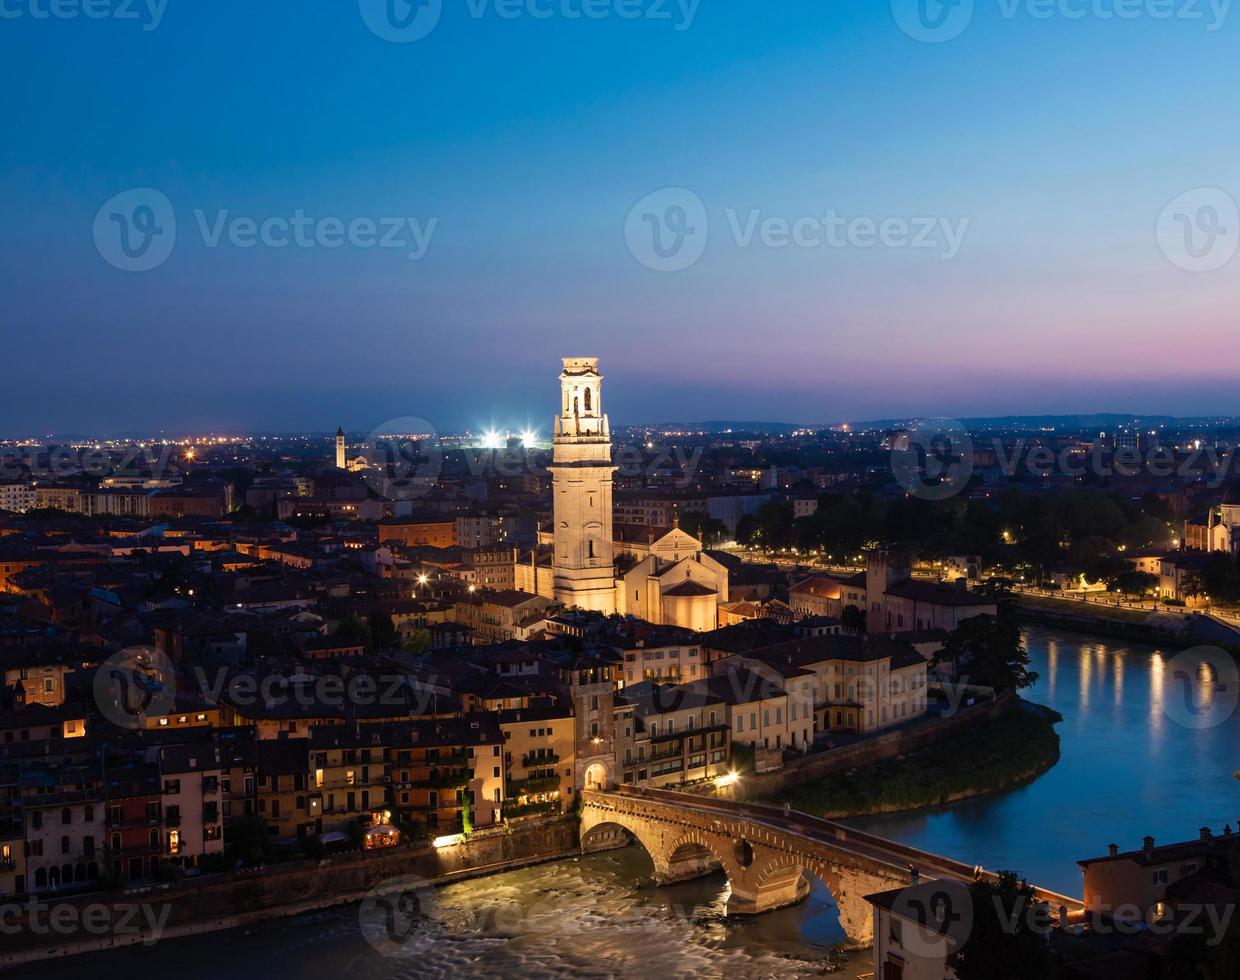 Verona, Italien - Panorama bei Nacht. beleuchtetes stadtbild mit malerischer brücke. foto